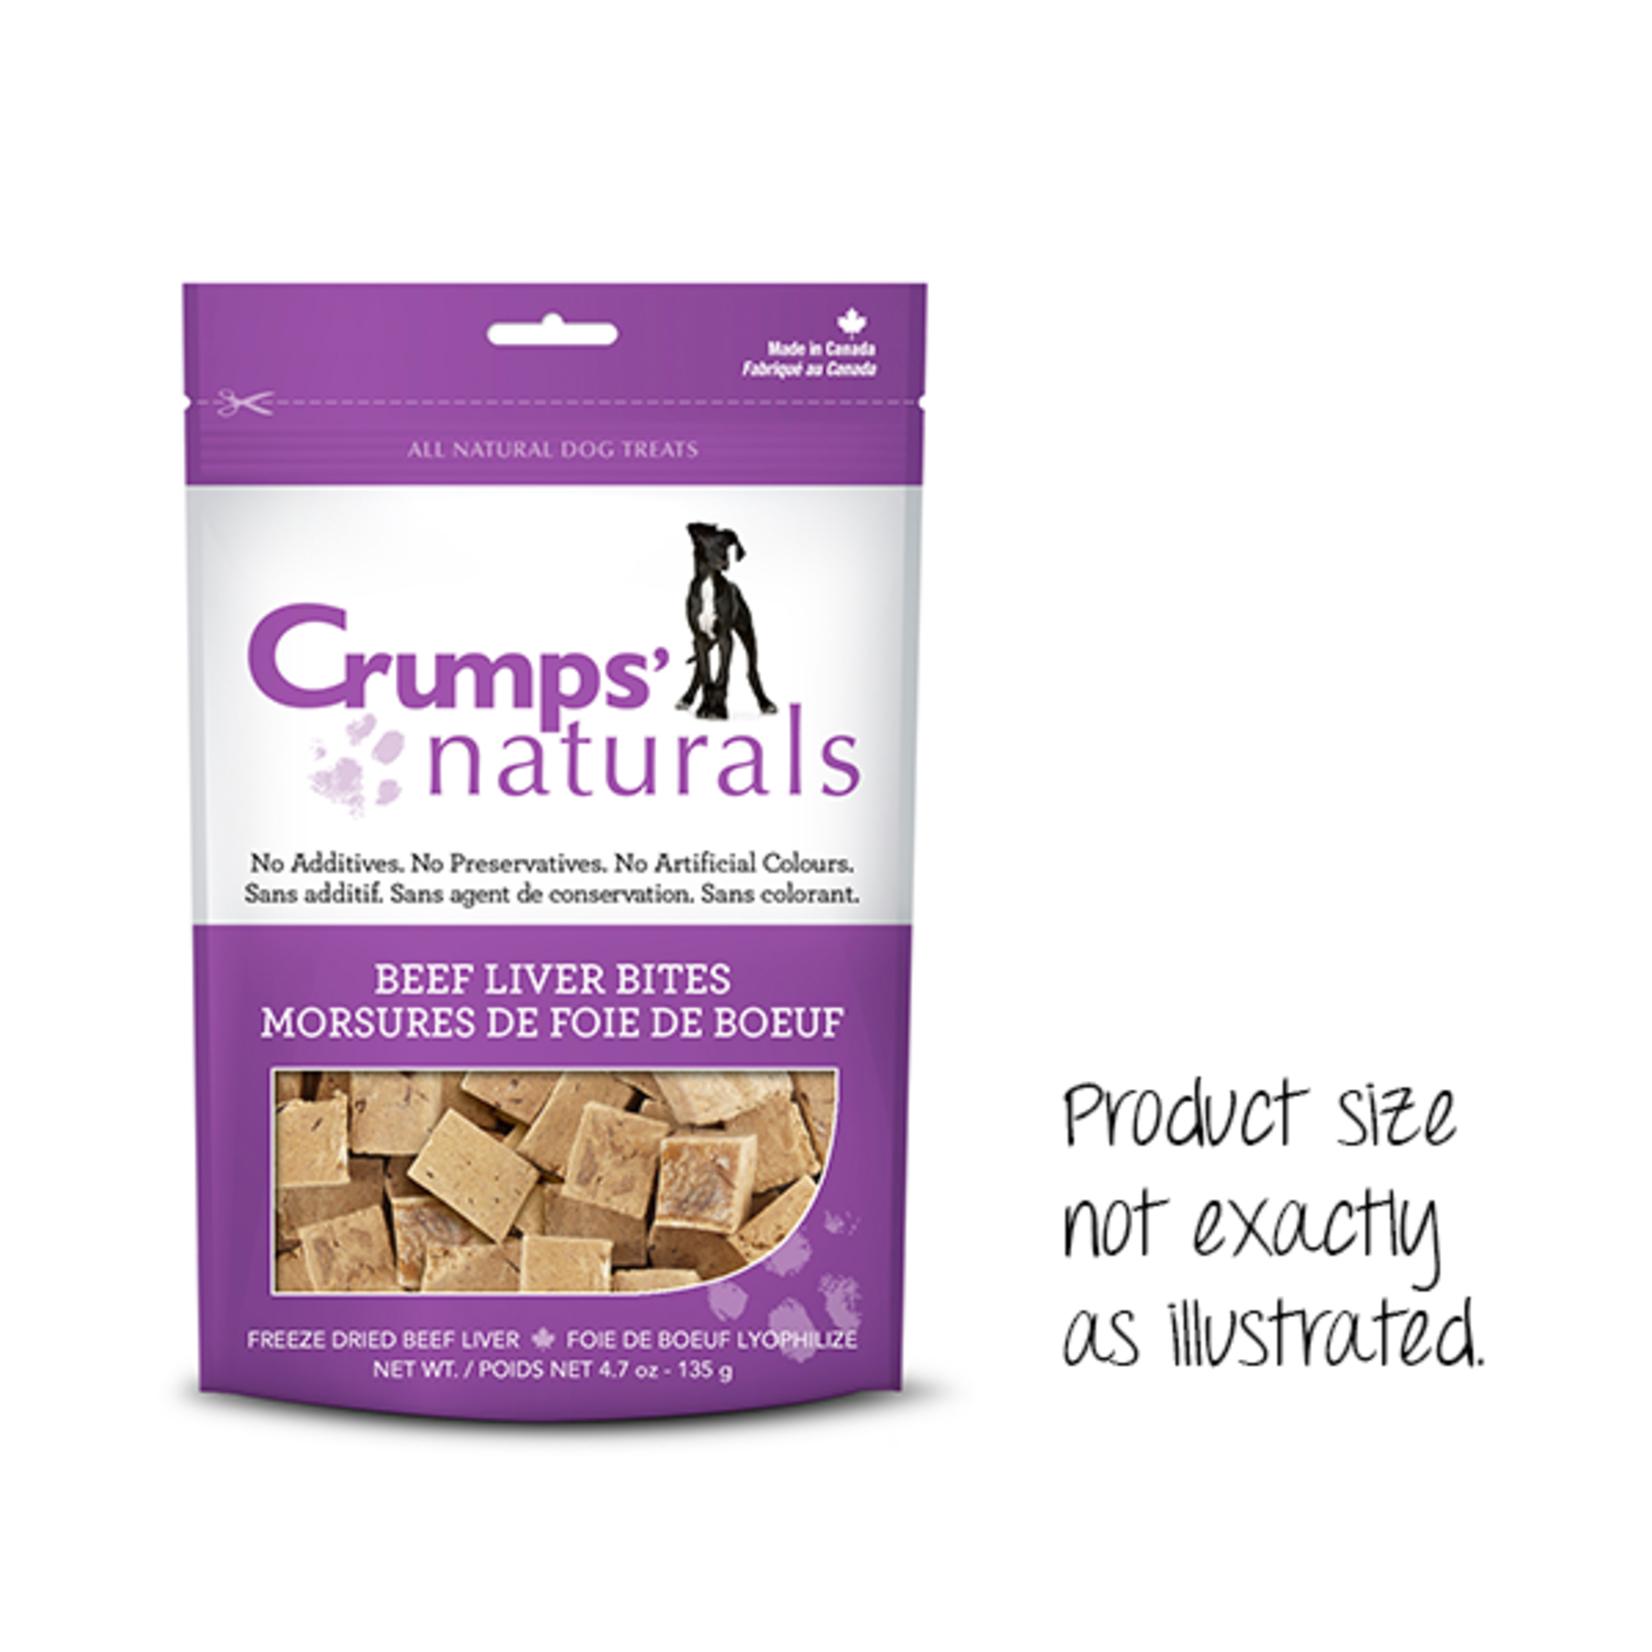 Crump's Naturals Crumps Beef Liver Bites 10oz /280g